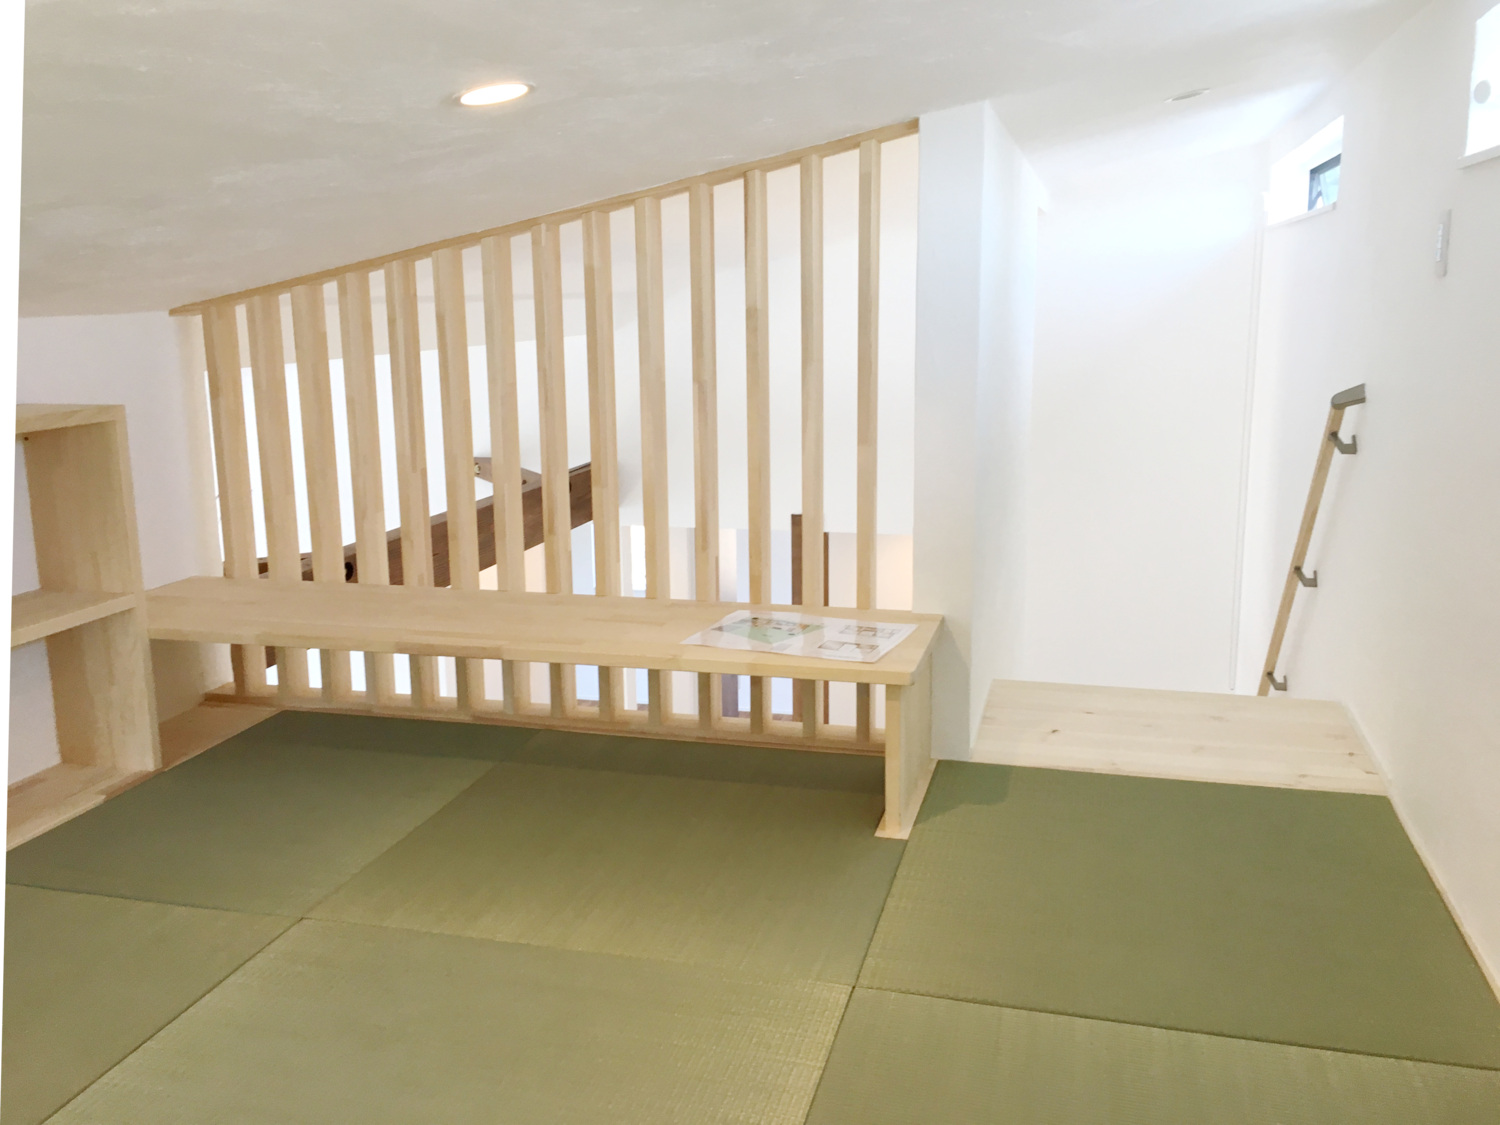 鉄骨階段と木製スリットが調和する開放的な吹き抜けの家。